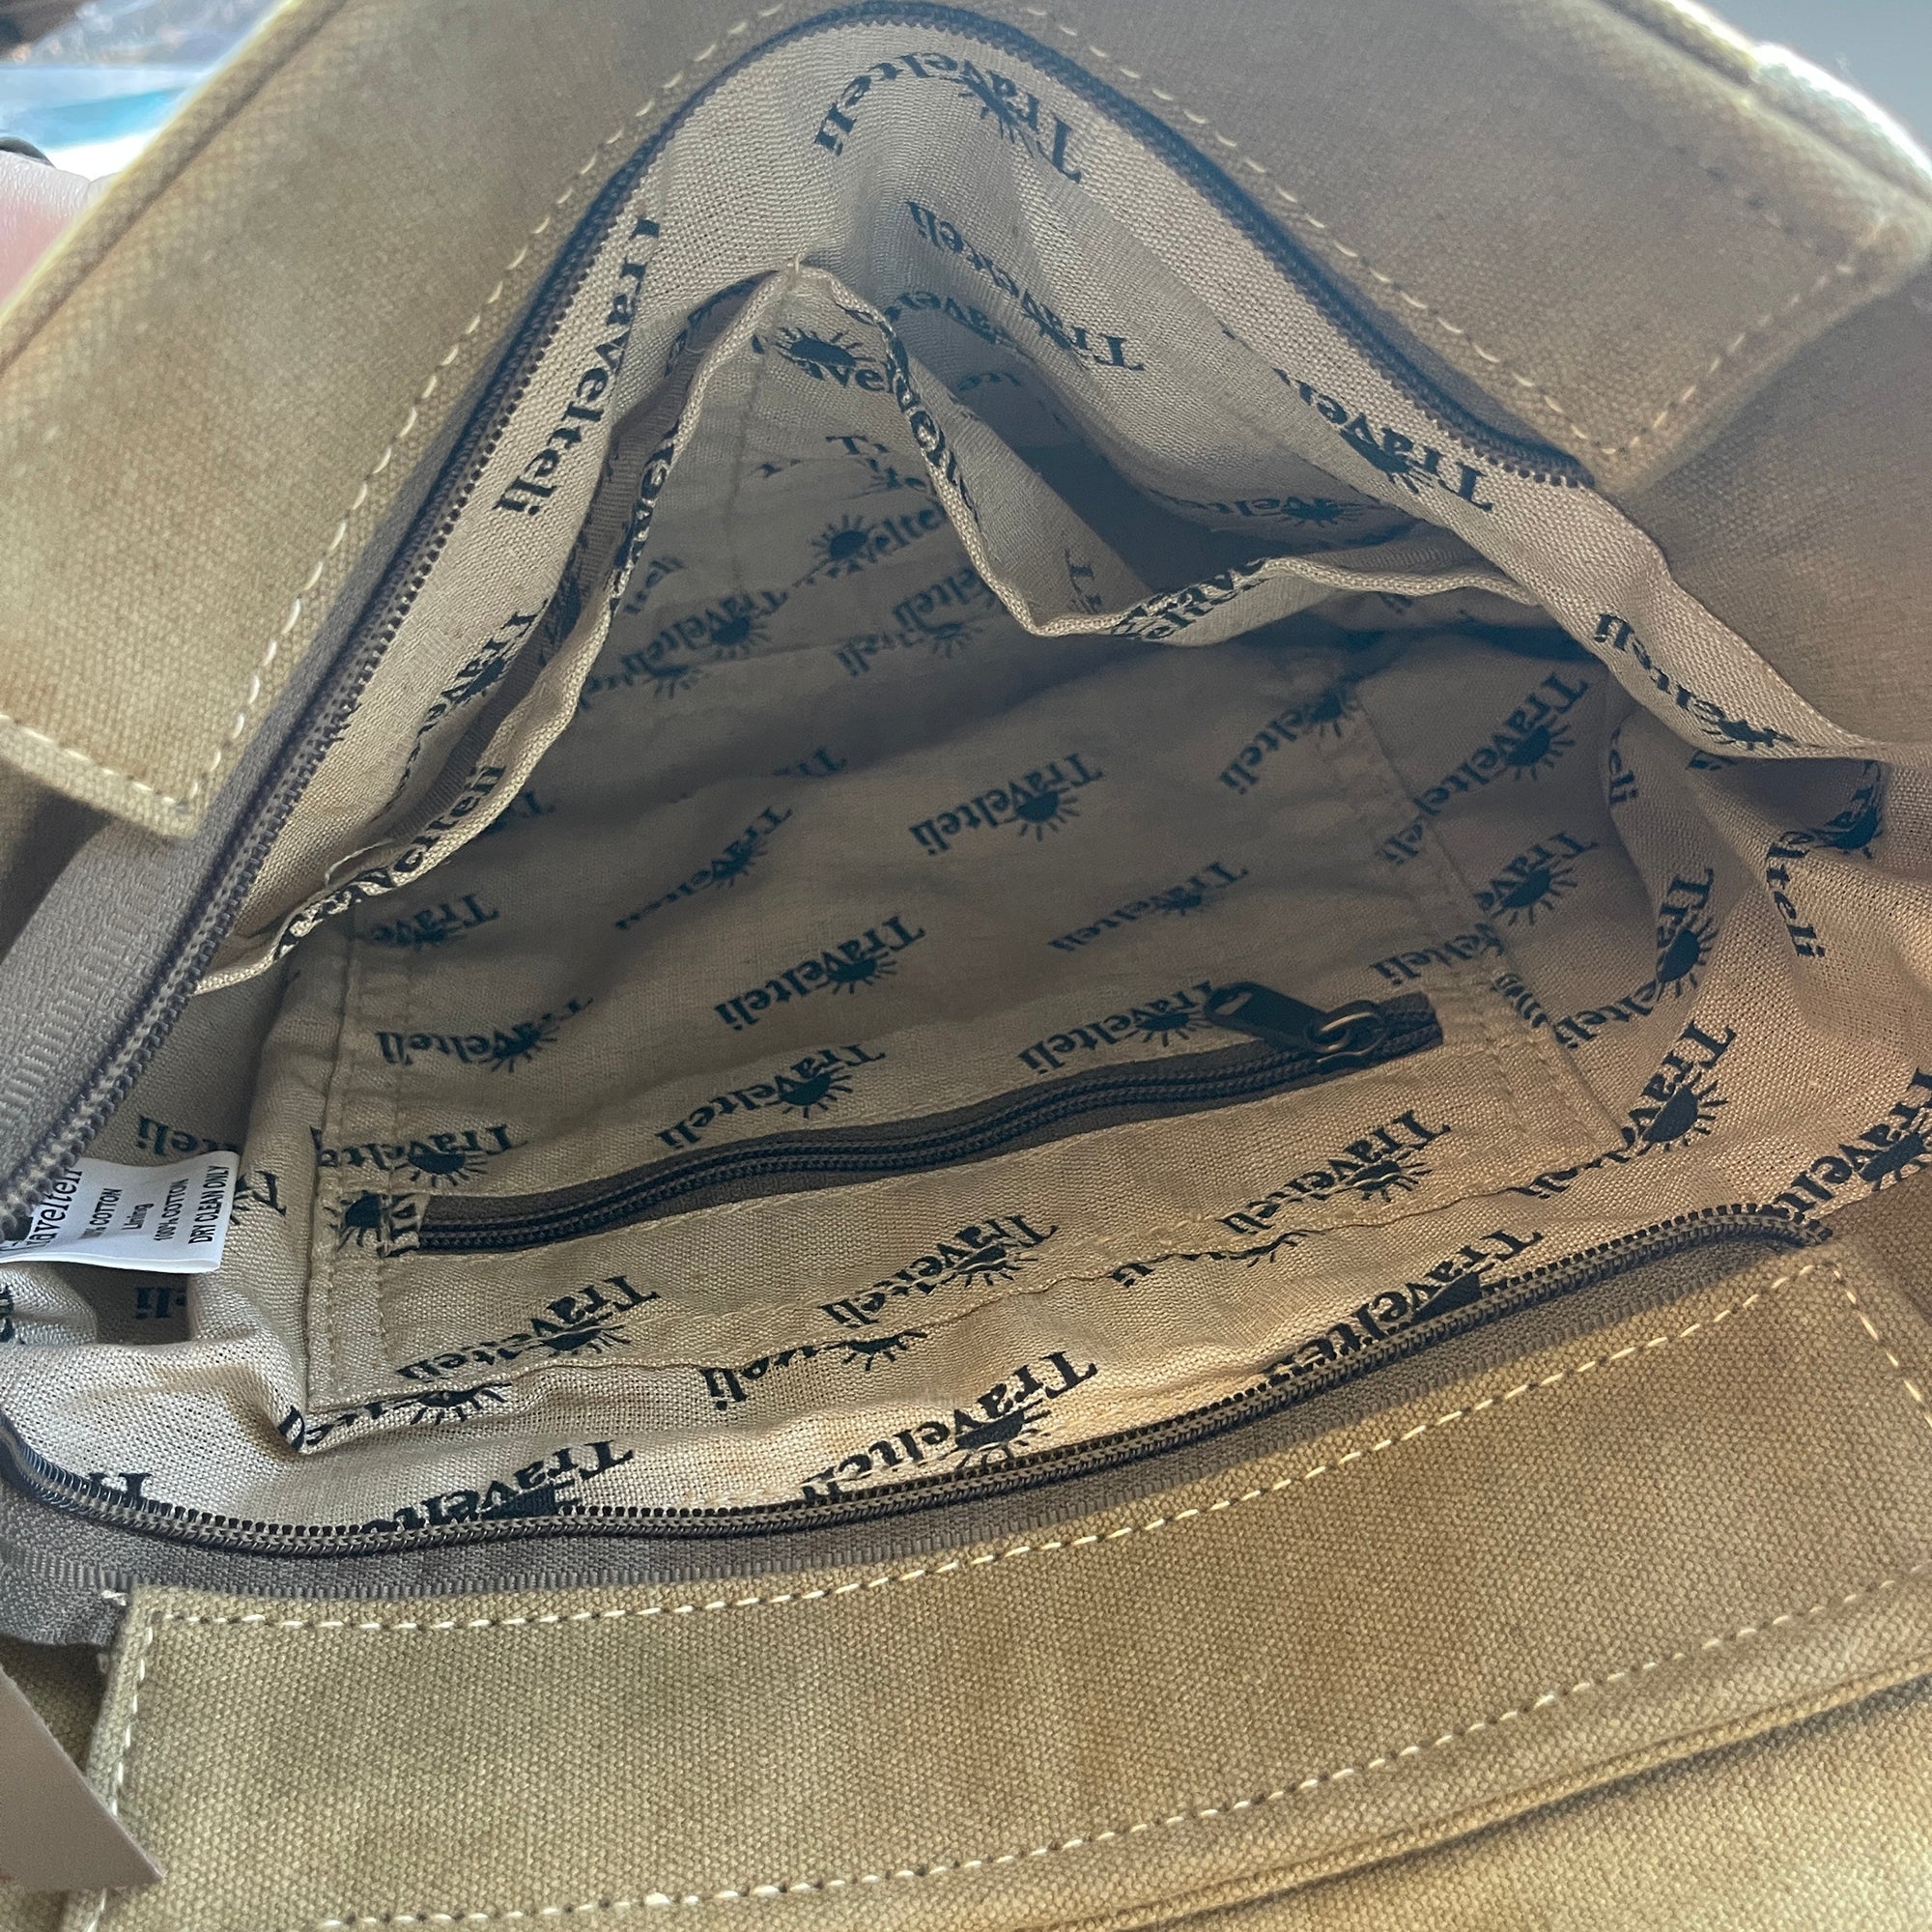 Canvas Leather Vintage Star Adjustable Strap Messenger Crossbody Shoulder  Bag